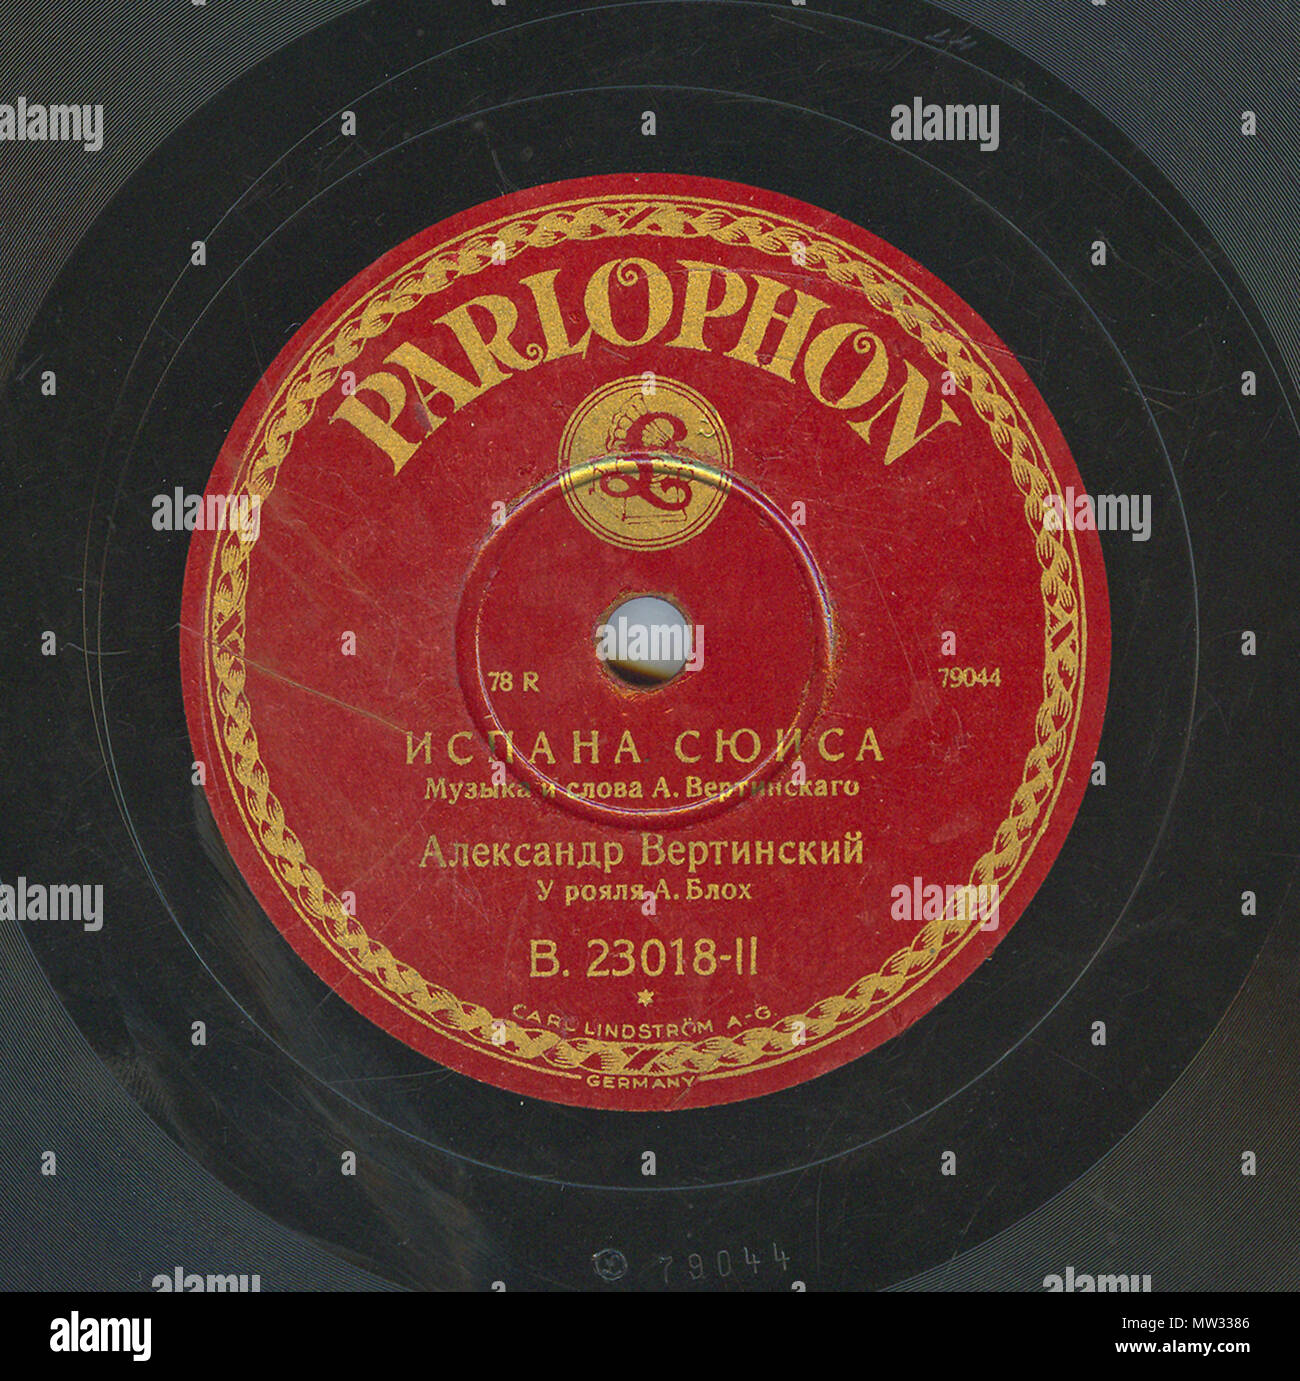 . Englisch: Vertinsky Parlophone B. 23018 02. 6. April 2010, 12:02:58. Parlophone 629 Vertinsky Parlophone B. 23018, 02. Stockfoto